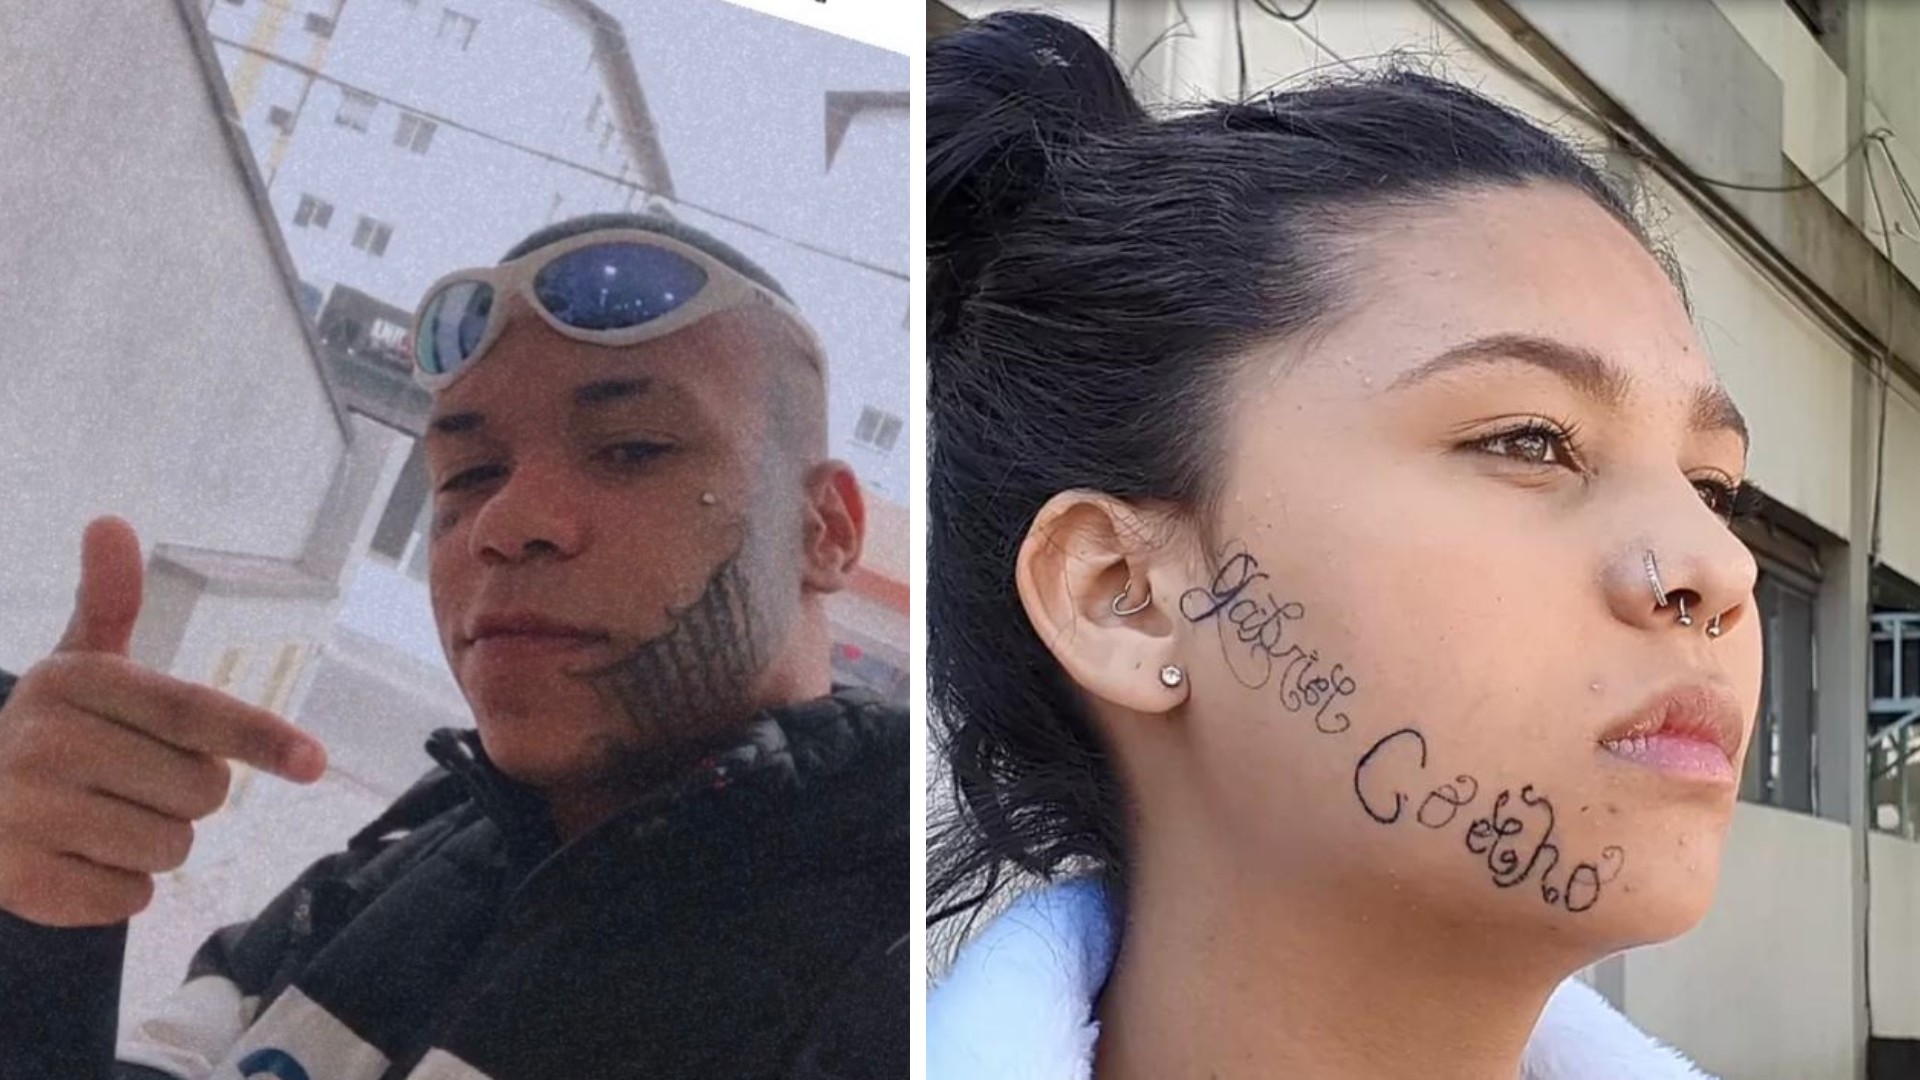 Pai de rapaz que tatuou nome no rosto da ex diz em depoimento à polícia que ato foi consentido; Celular dele vai passar por perícia